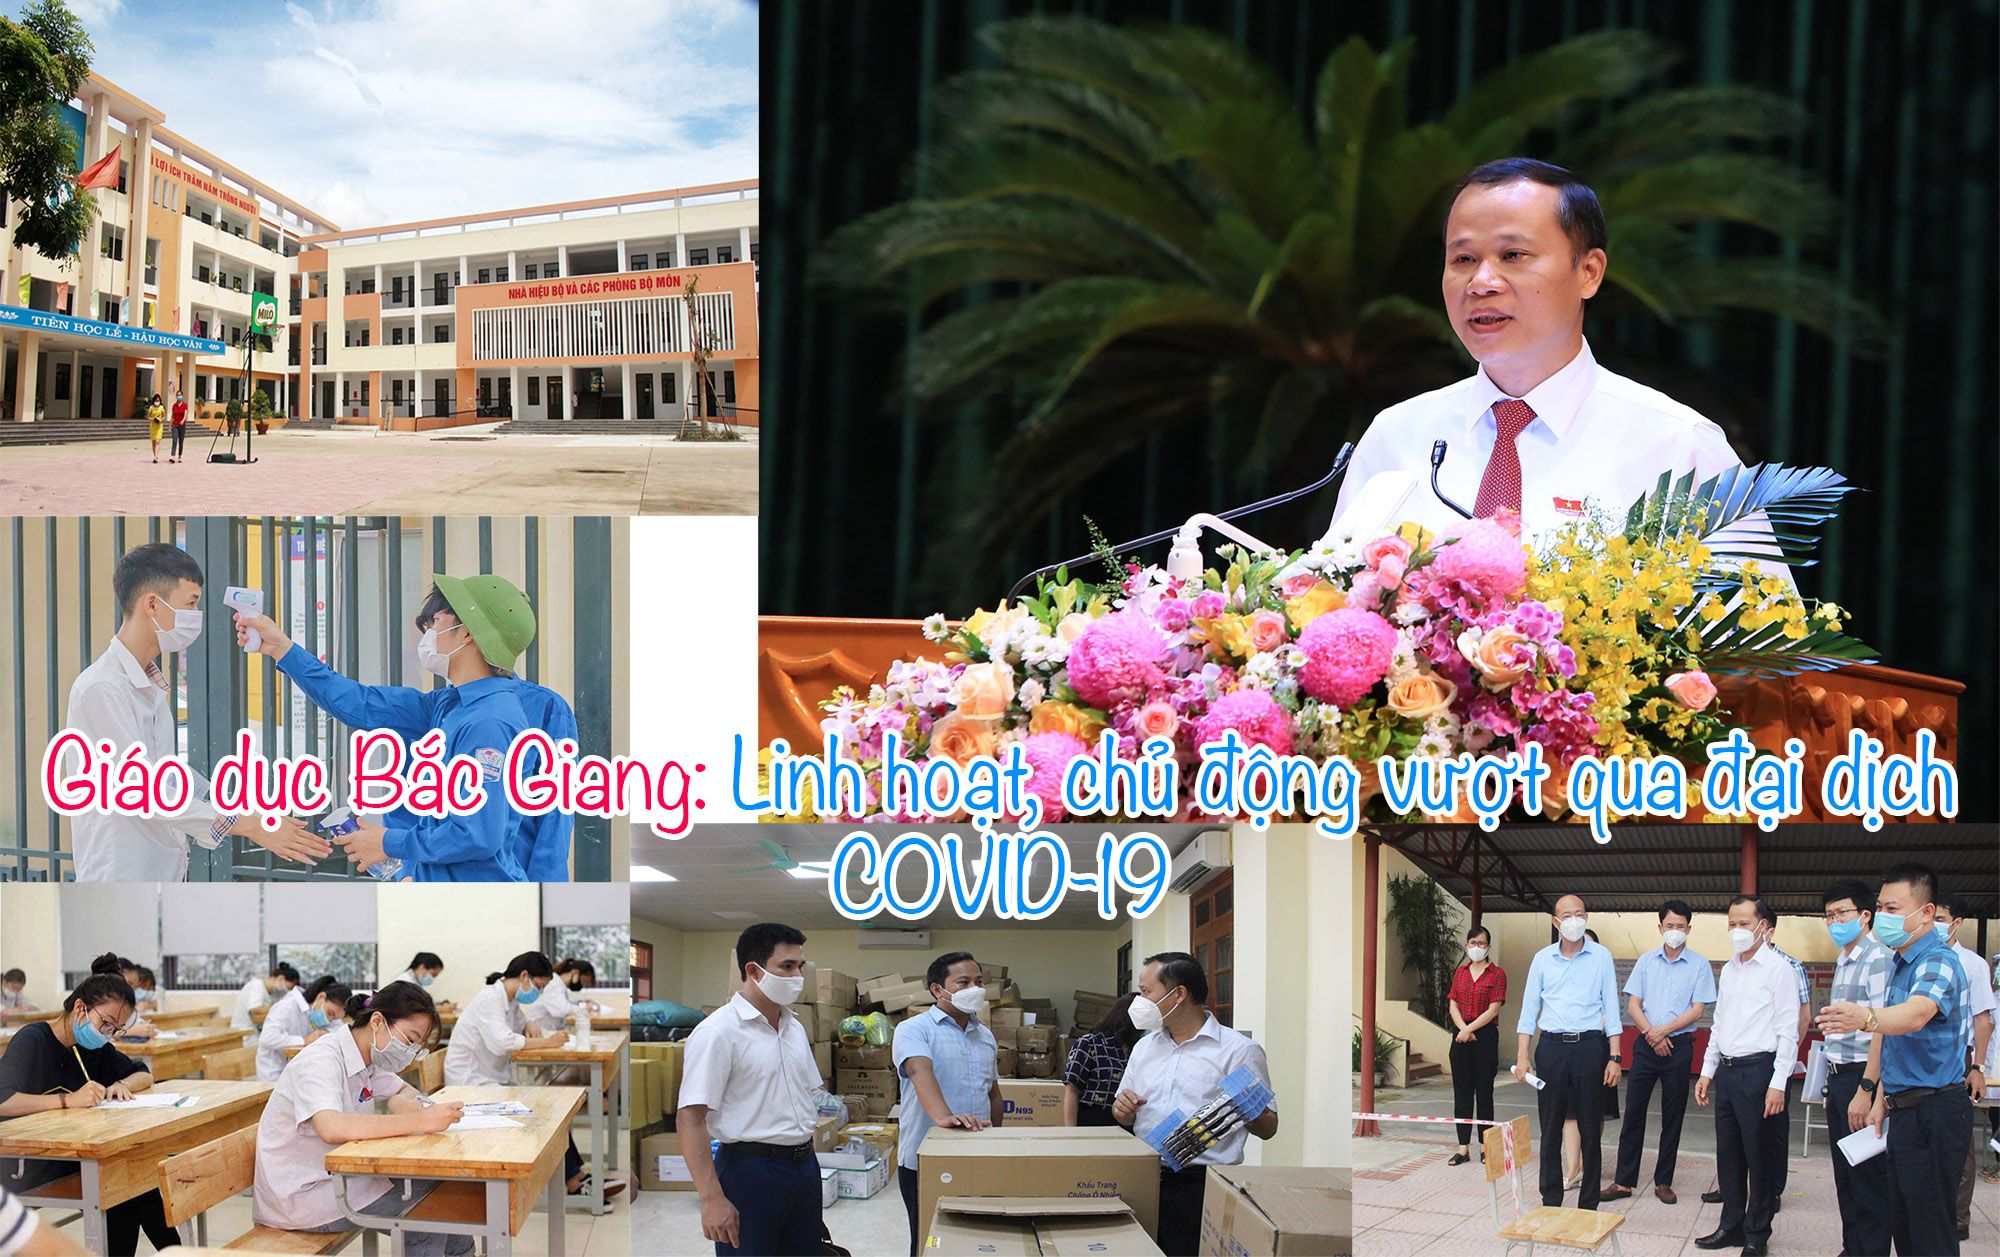 Giáo dục Bắc Giang: Linh hoạt, chủ động vượt qua đại dịch COVID-19